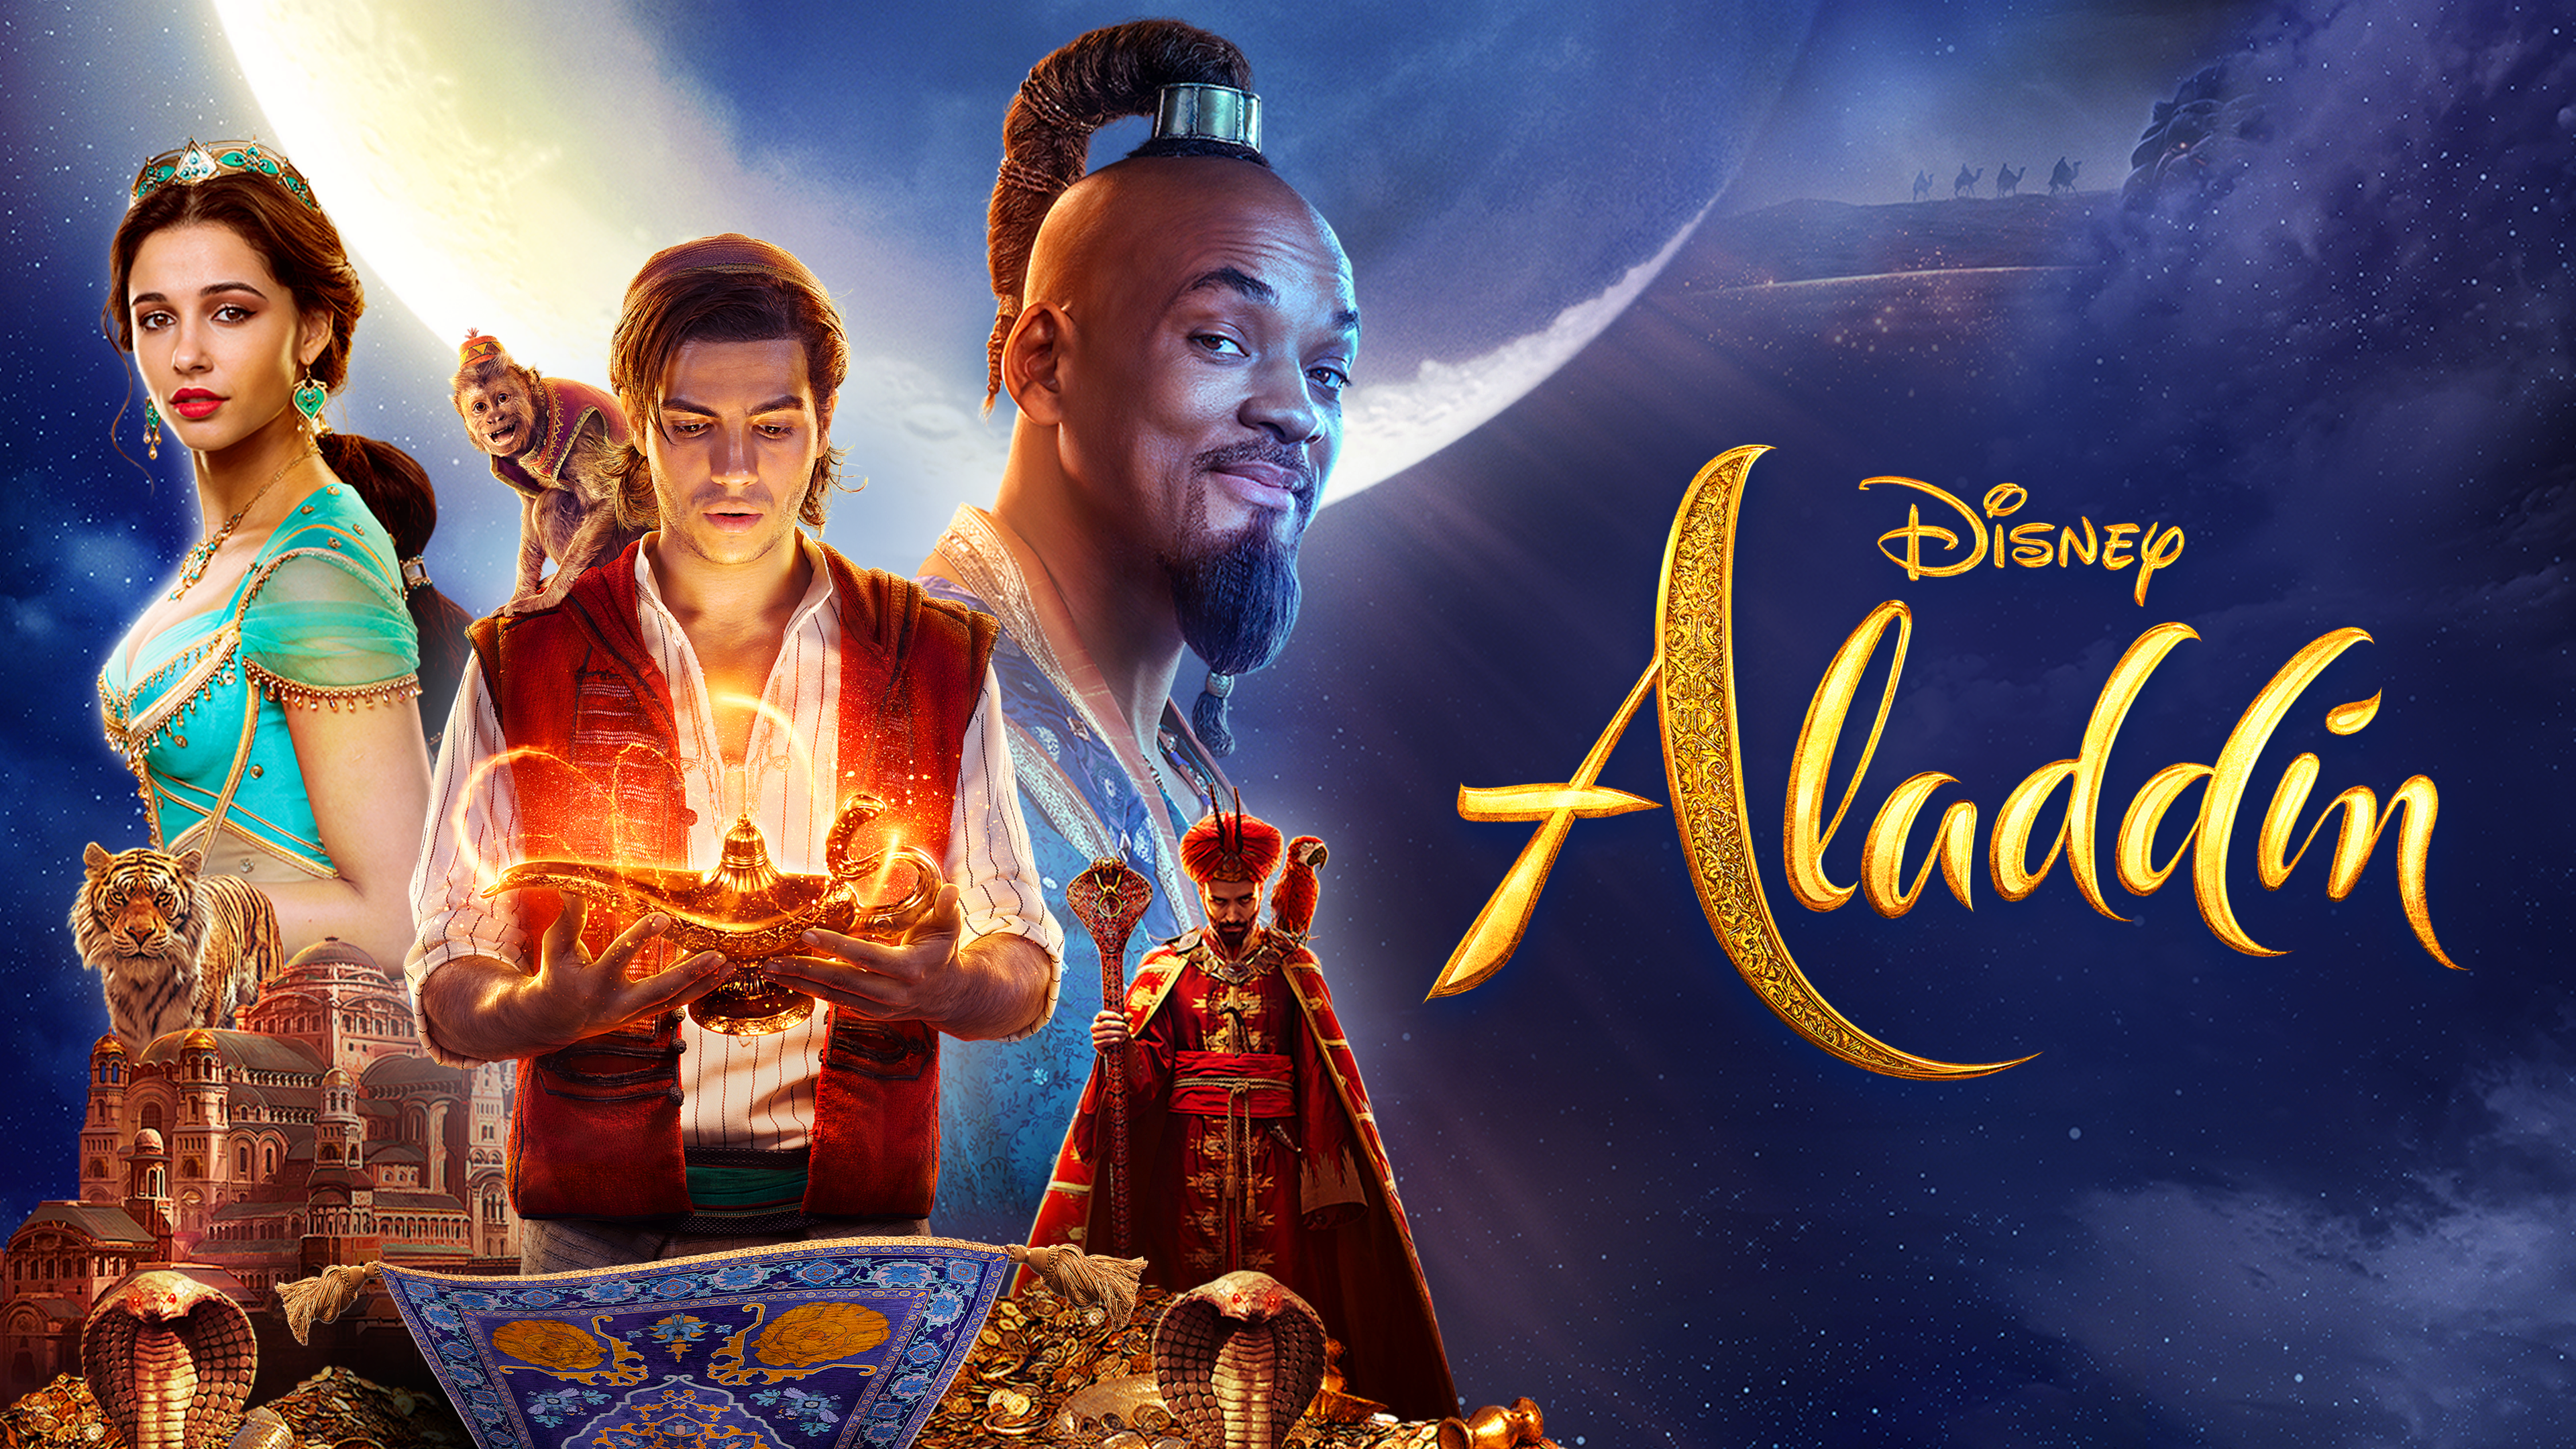 Filmbeschreibung zu Aladdin (1992)